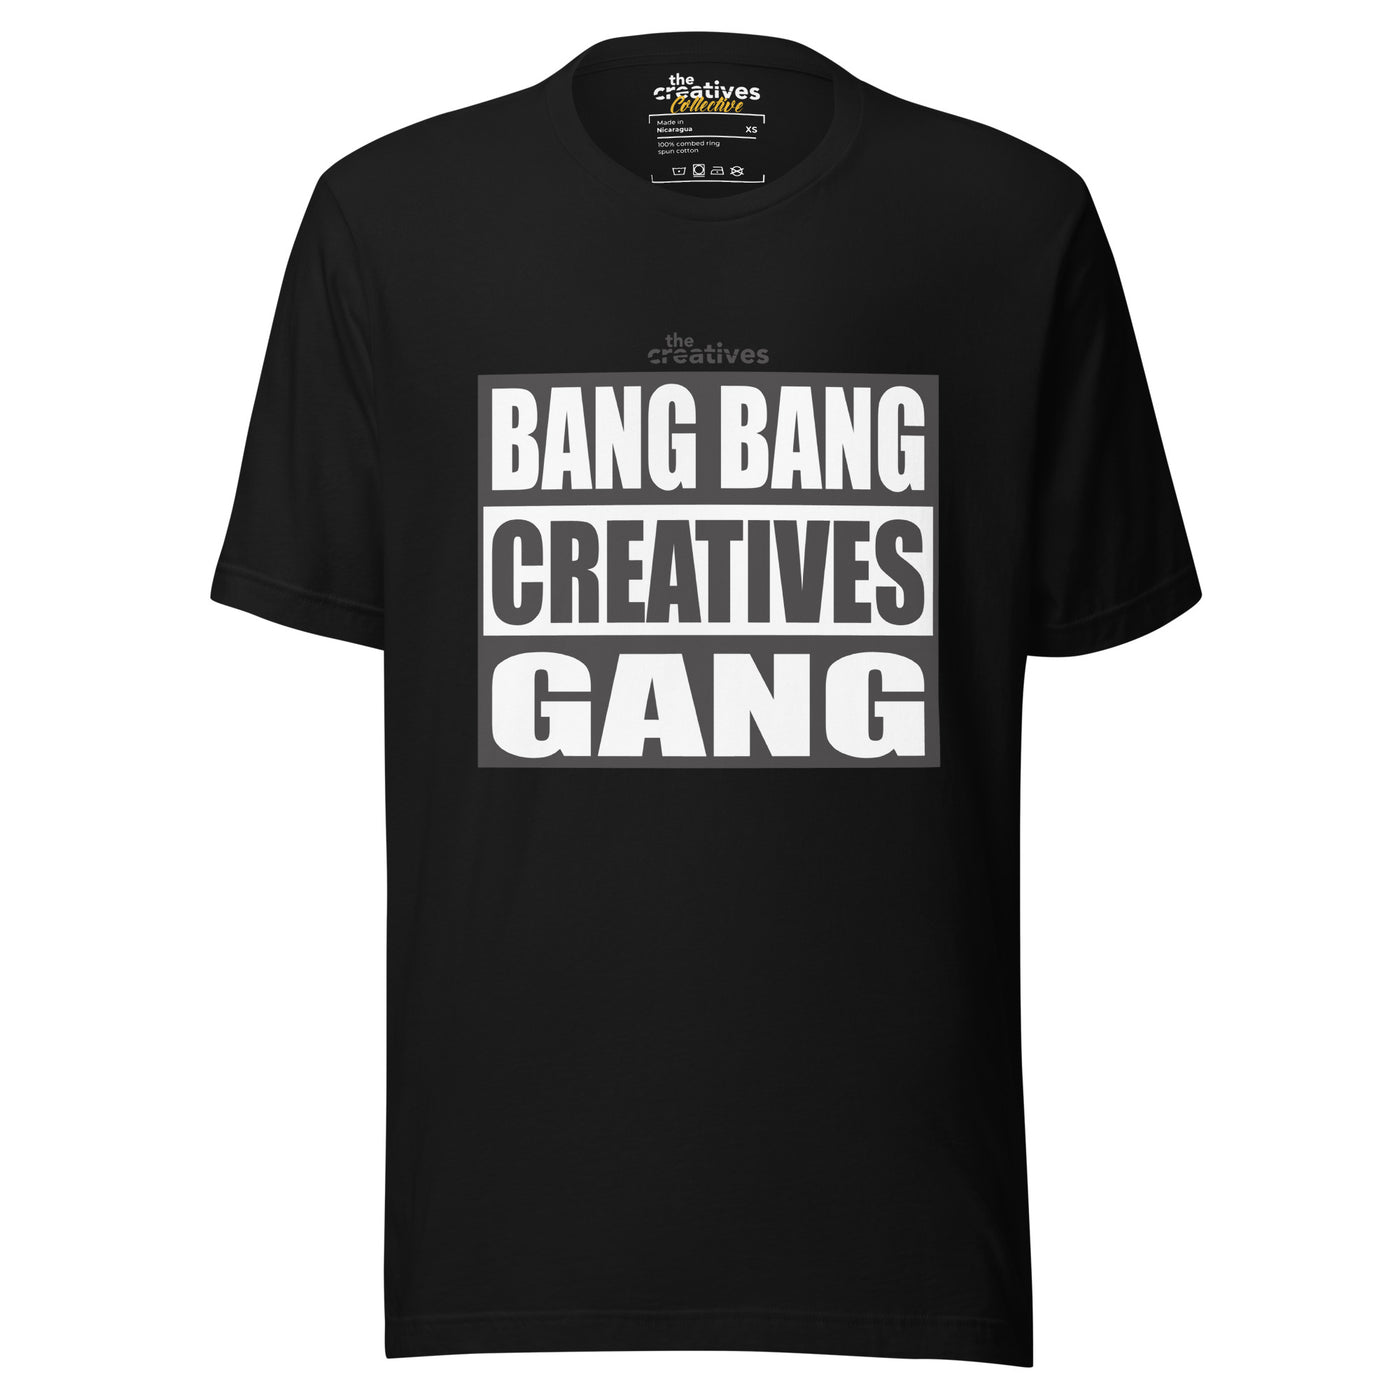 BANG BANG CREATIVES! Unisex t-shirt